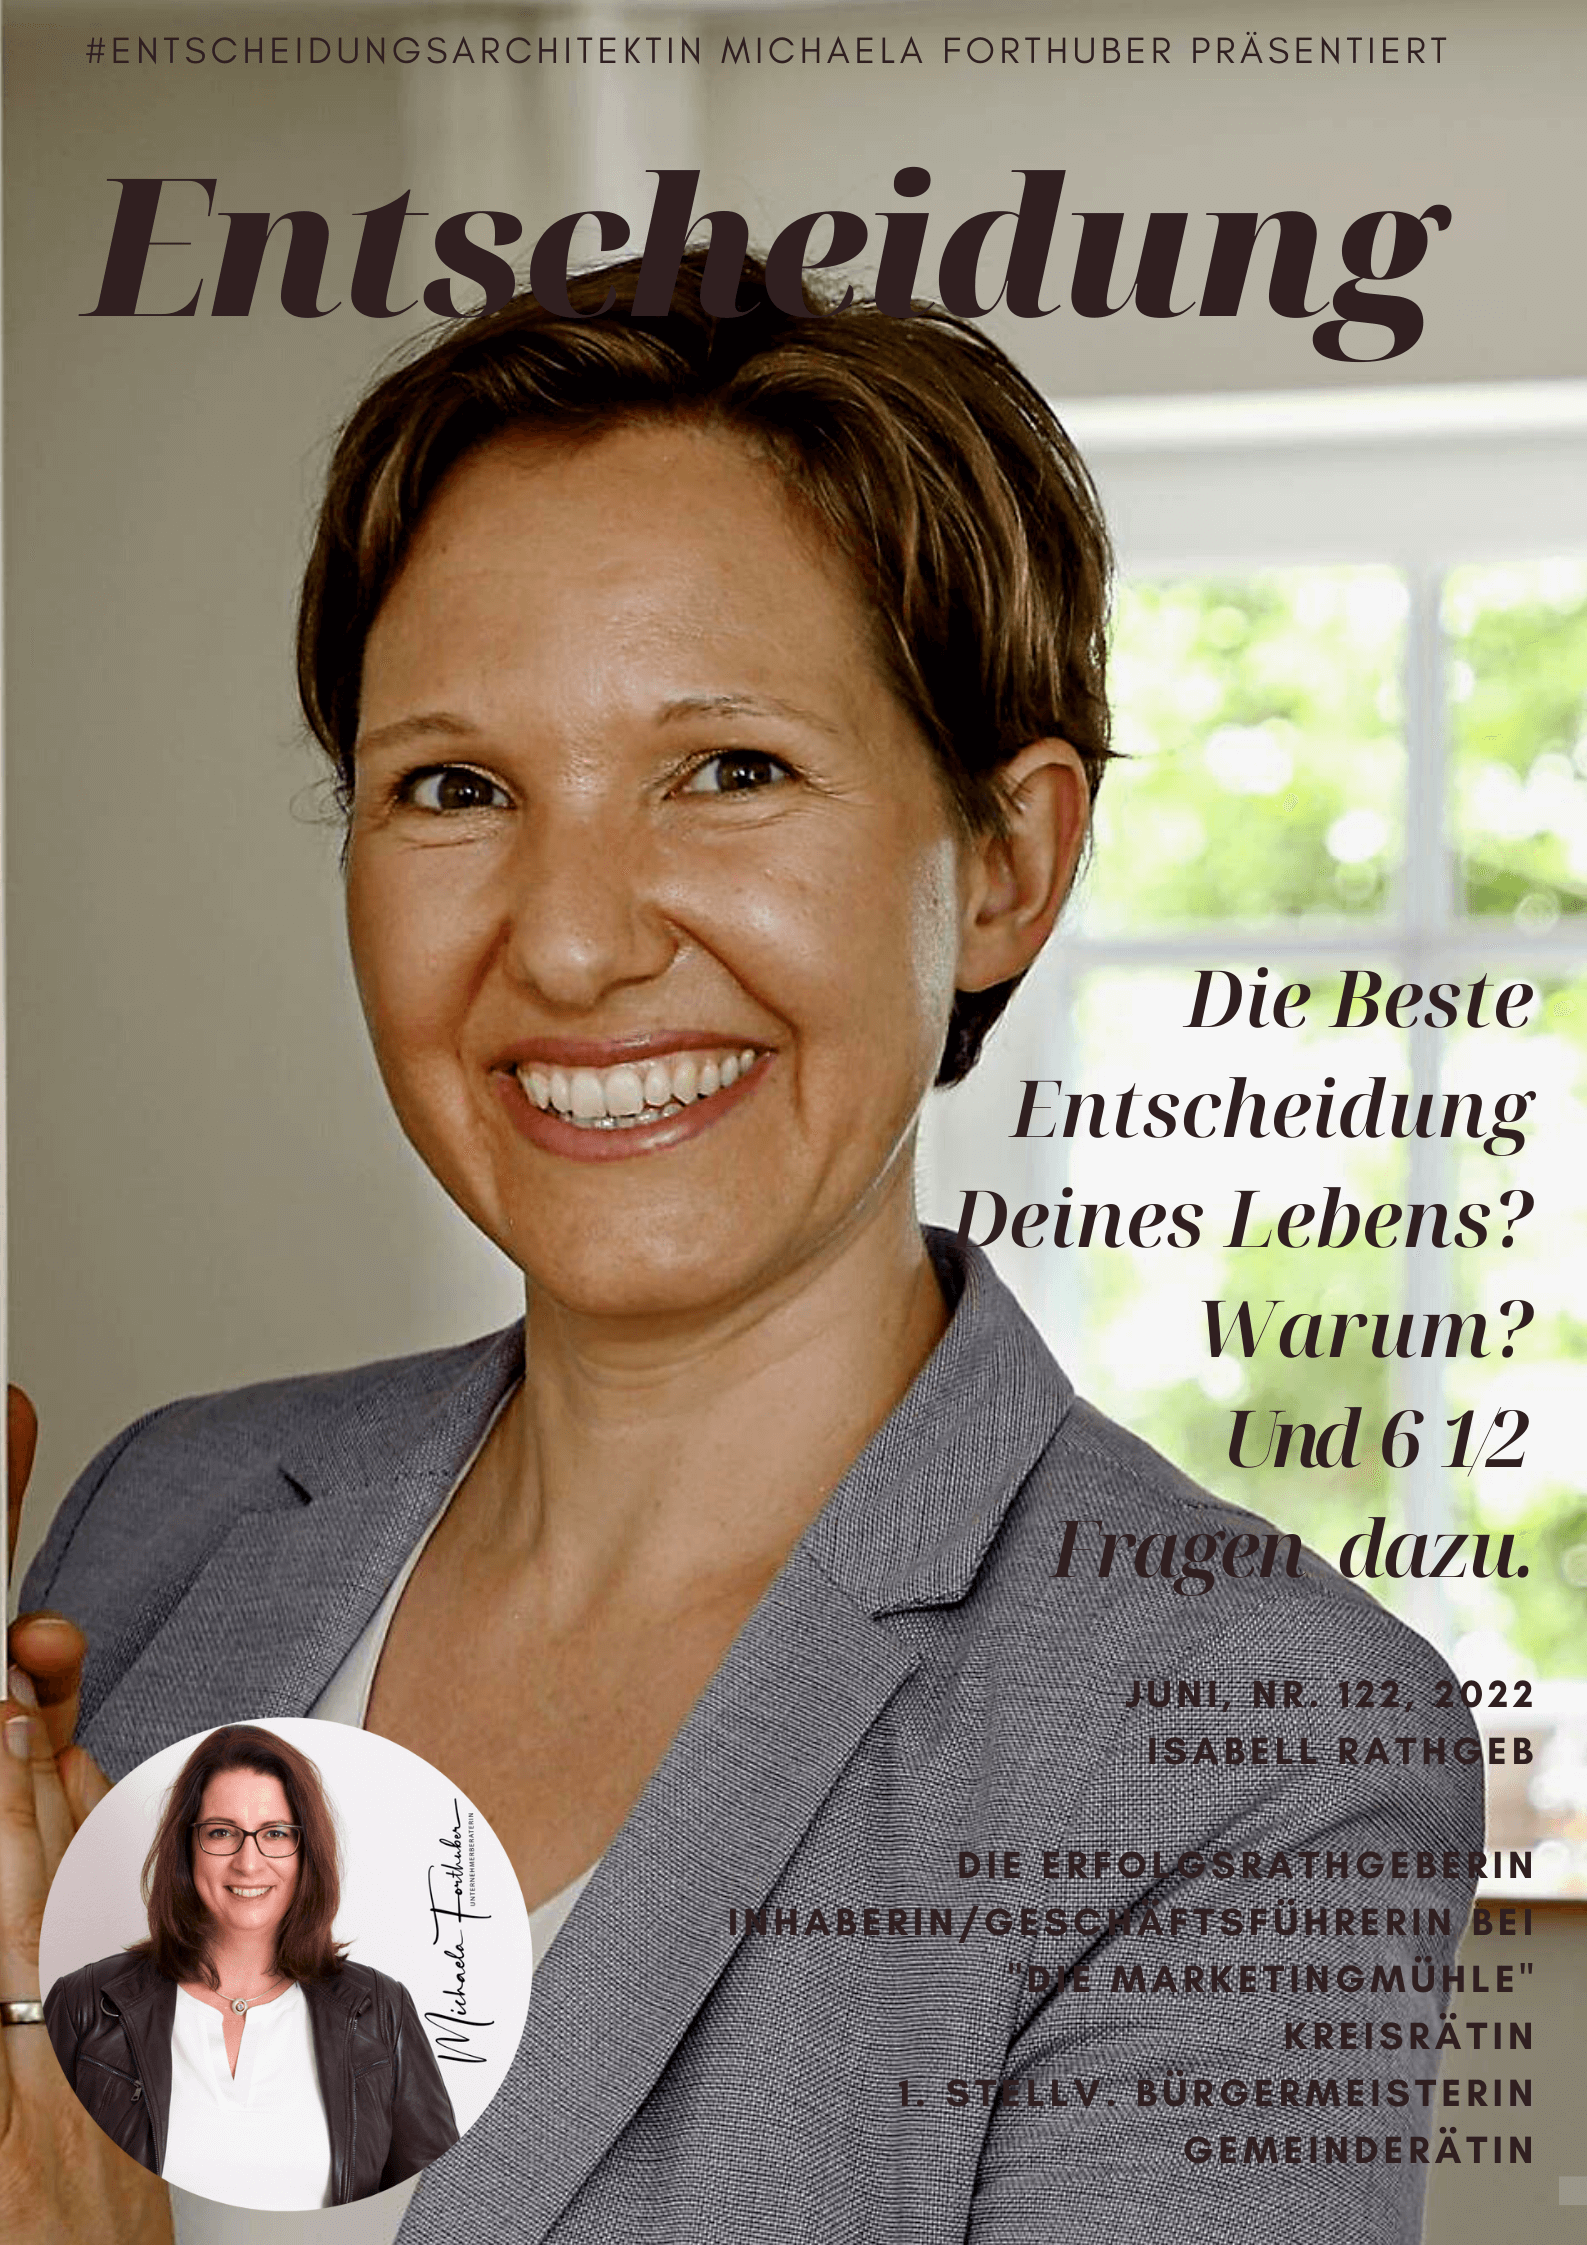 Blog Interview Entscheiden Cover Michaela Forthuber #Entscheidungsarchitektin mit Isabell Rathgeb